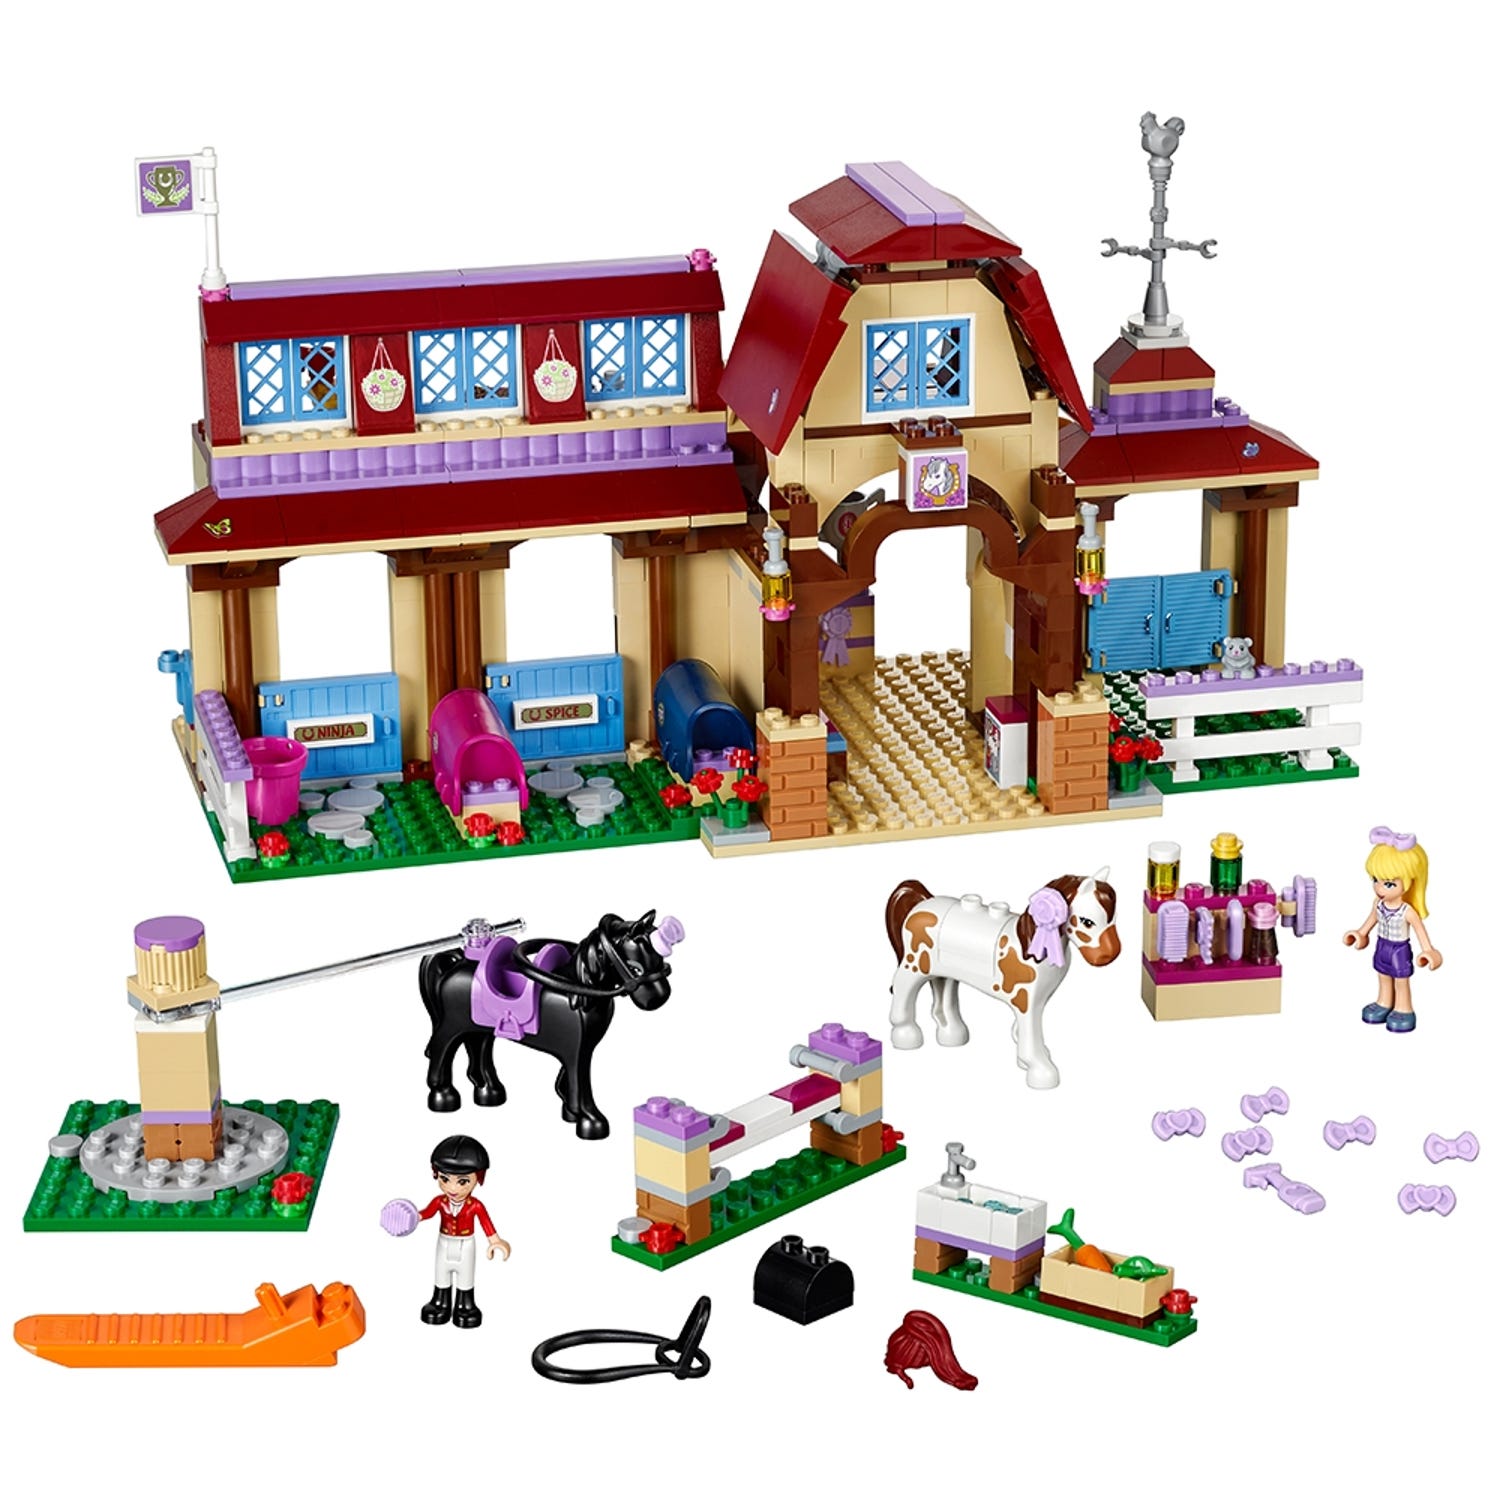 Heartlaken ratsastuskoulu 41126 | Friends | Virallinen LEGO®-kaupasta FI